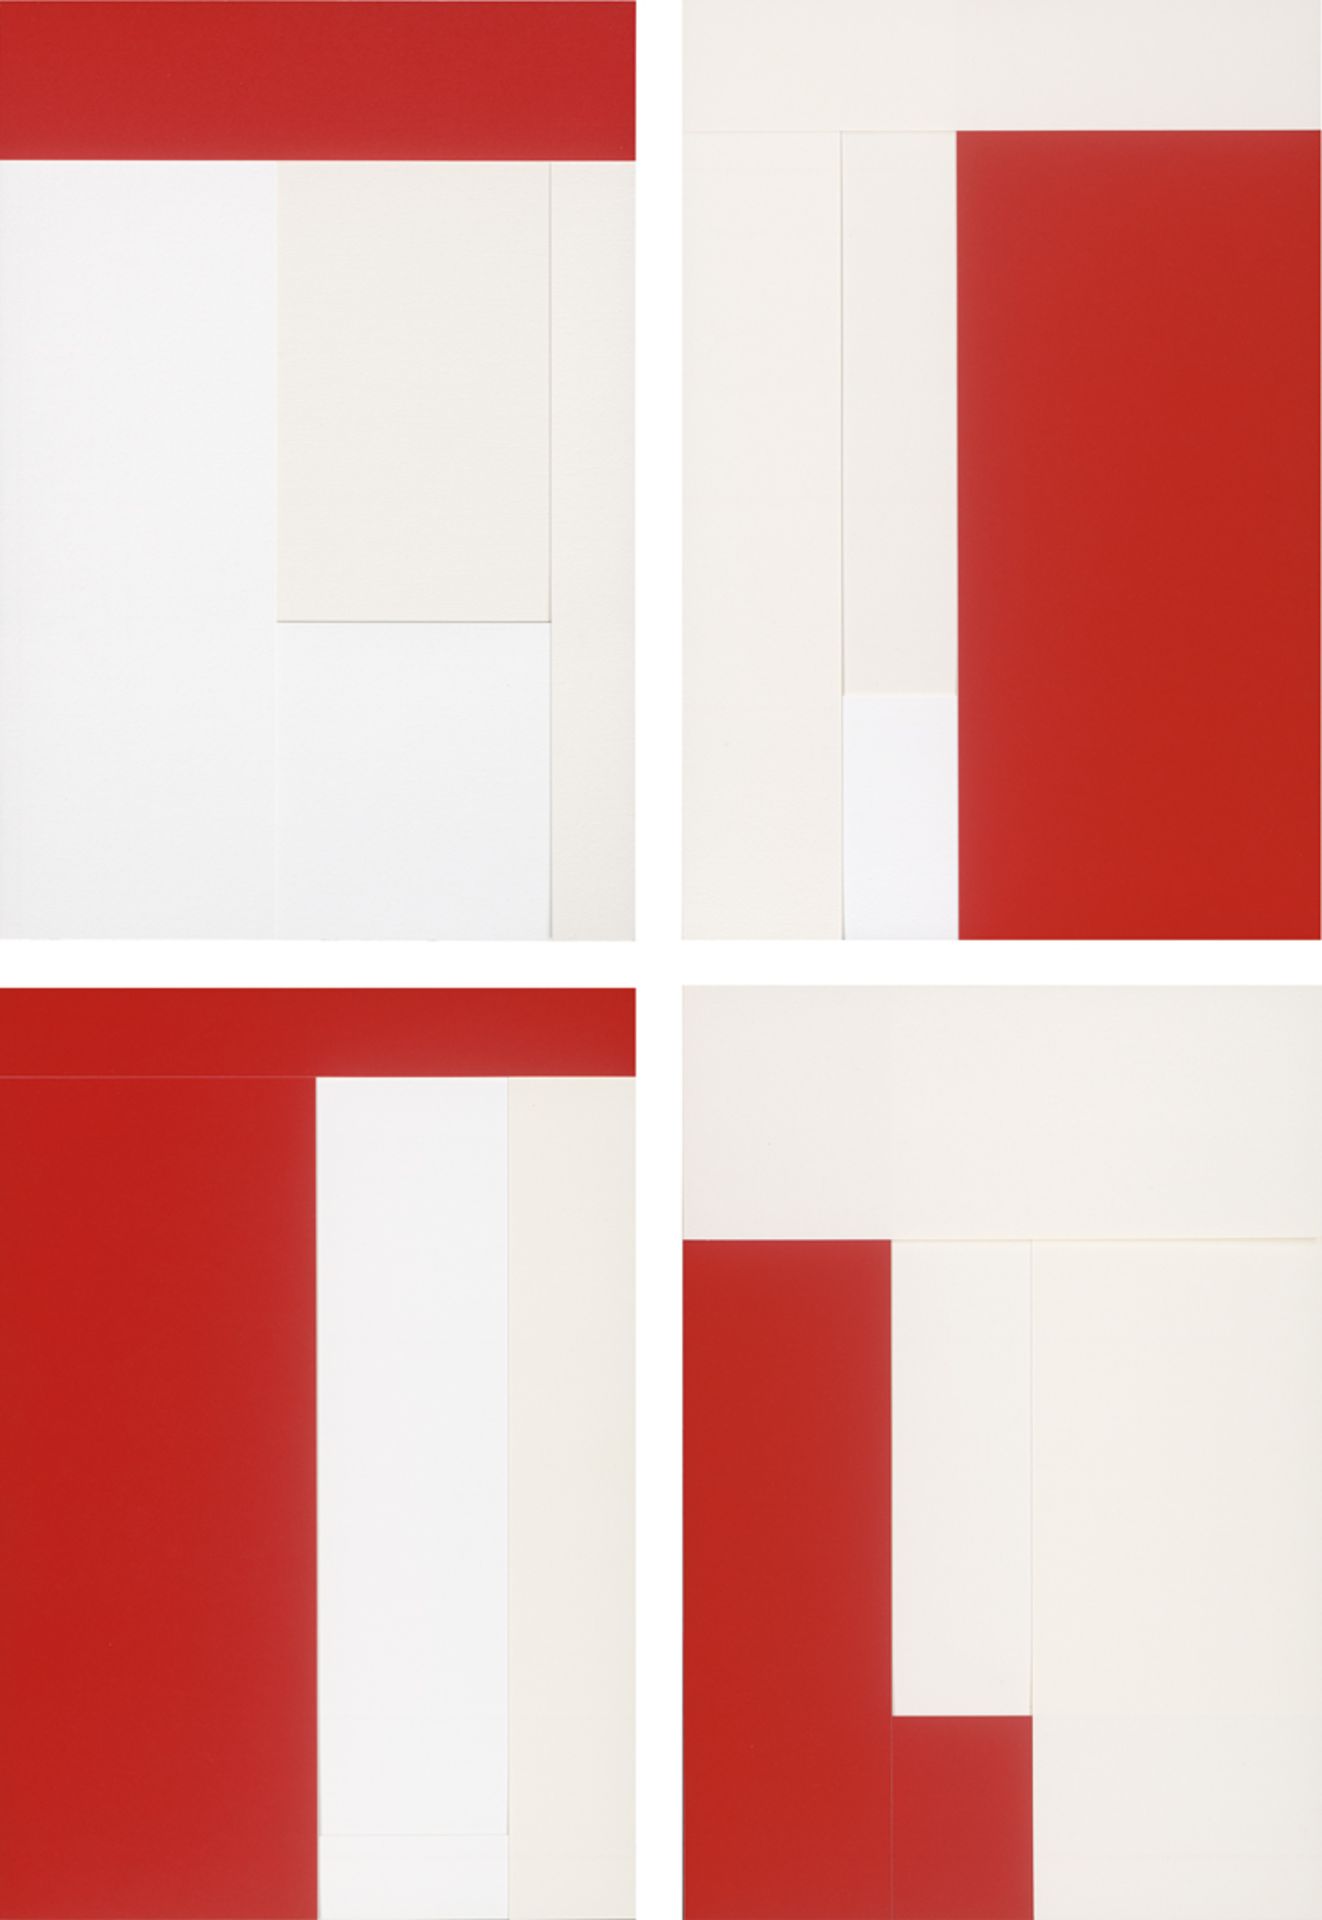 Knoebel, Imi: Rot-Weiß - Bild 5 aus 10